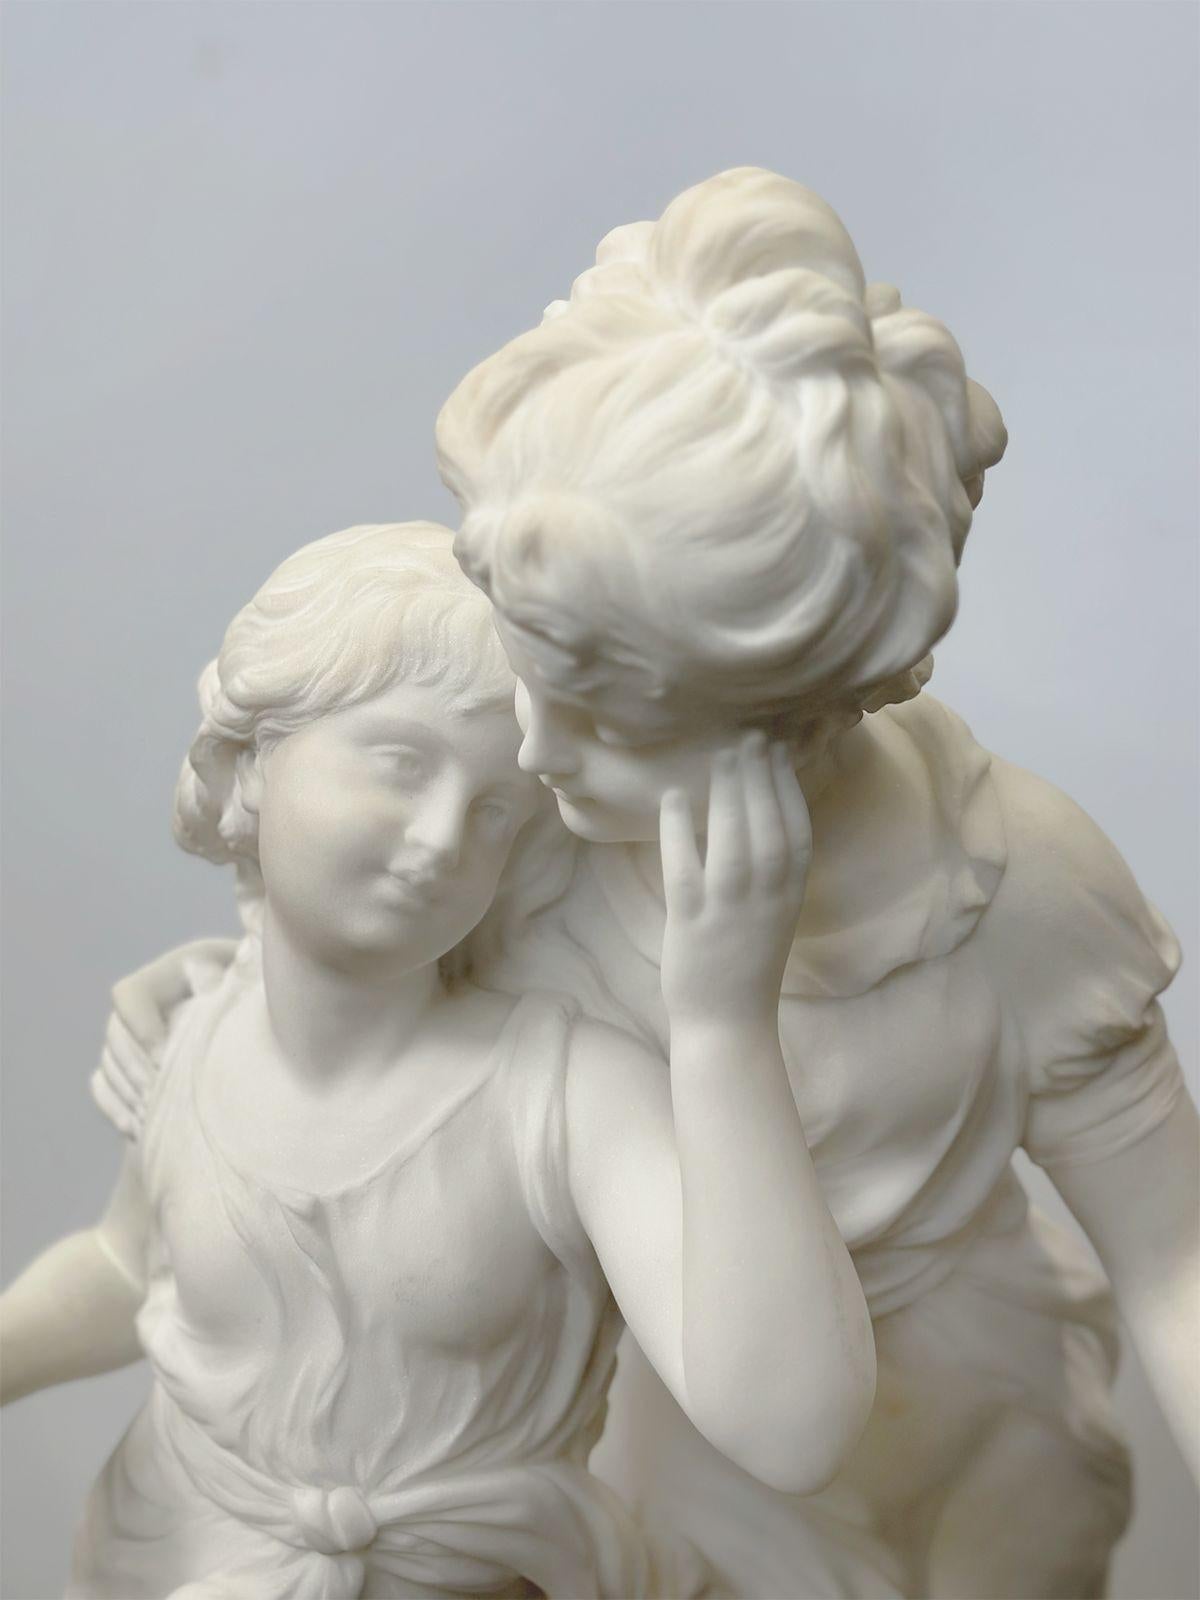 Sculpture en marbre français de la fin du XIXe siècle, sculptée à la main, représentant deux jeunes filles se tenant gracieusement ensemble et portant des vêtements traditionnels. L'une d'elles semble tenir une fleur. Signé sur la base 